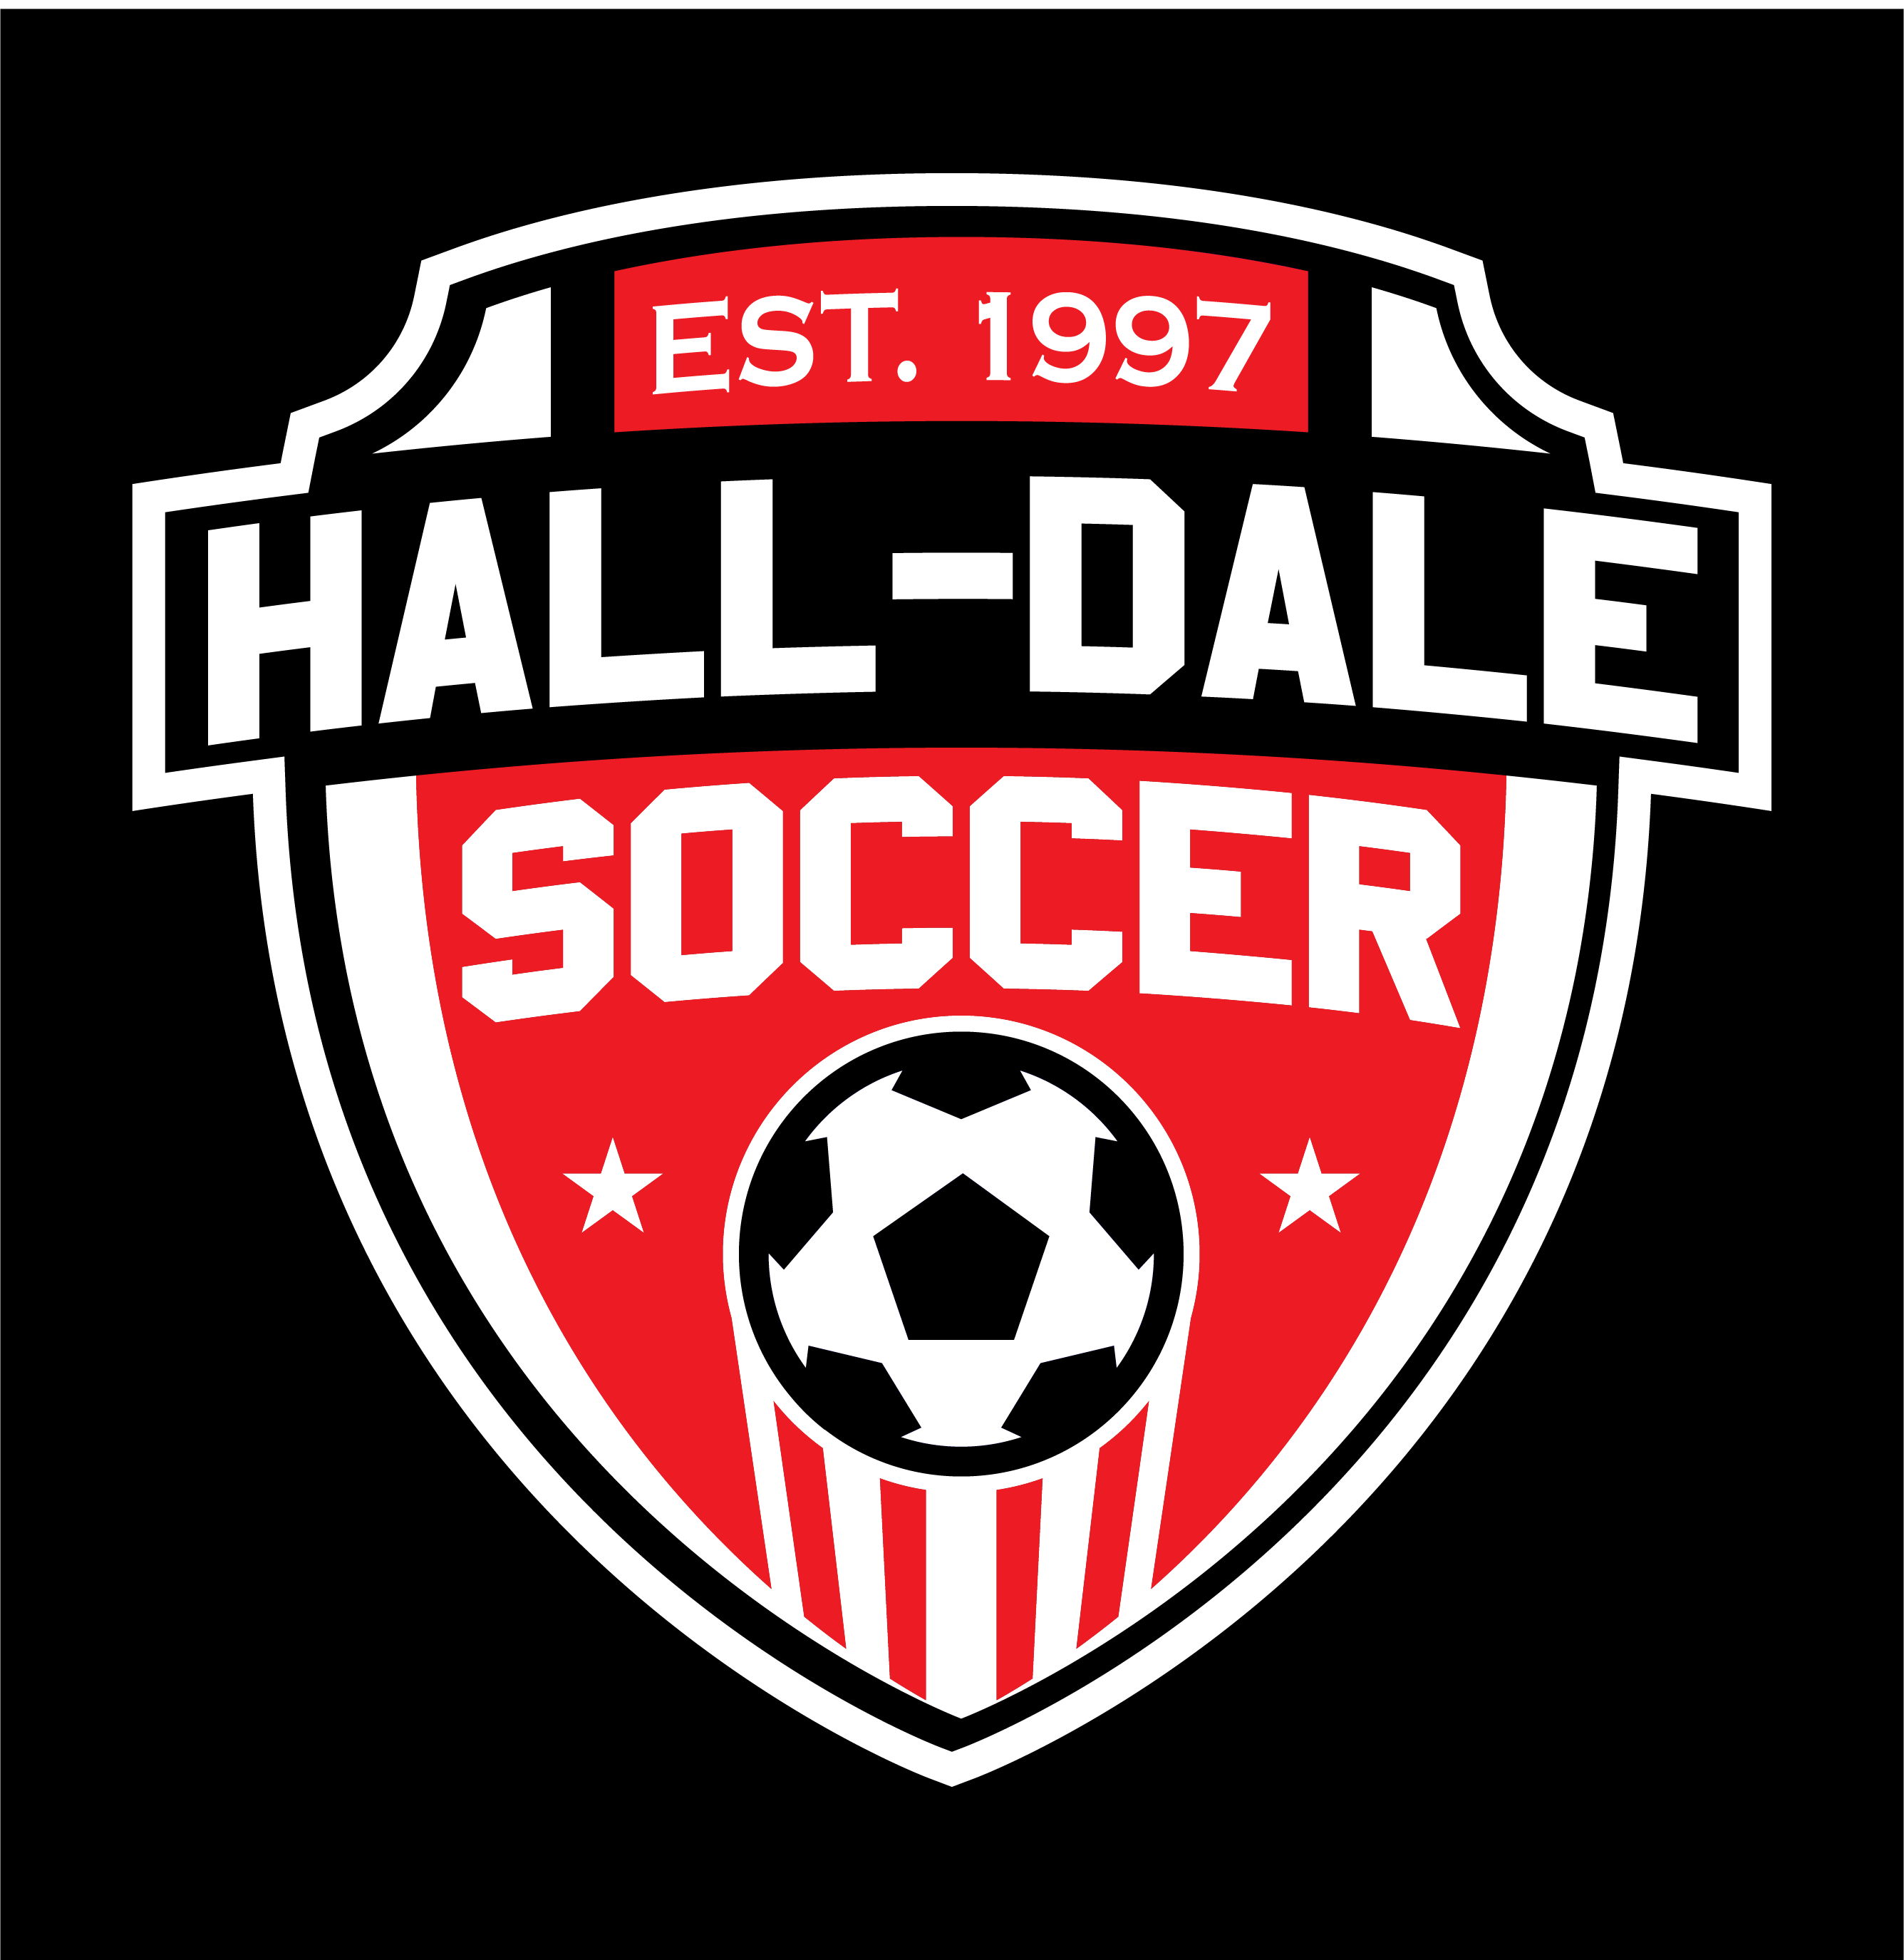 Hall Dale Girls Soccer Crest